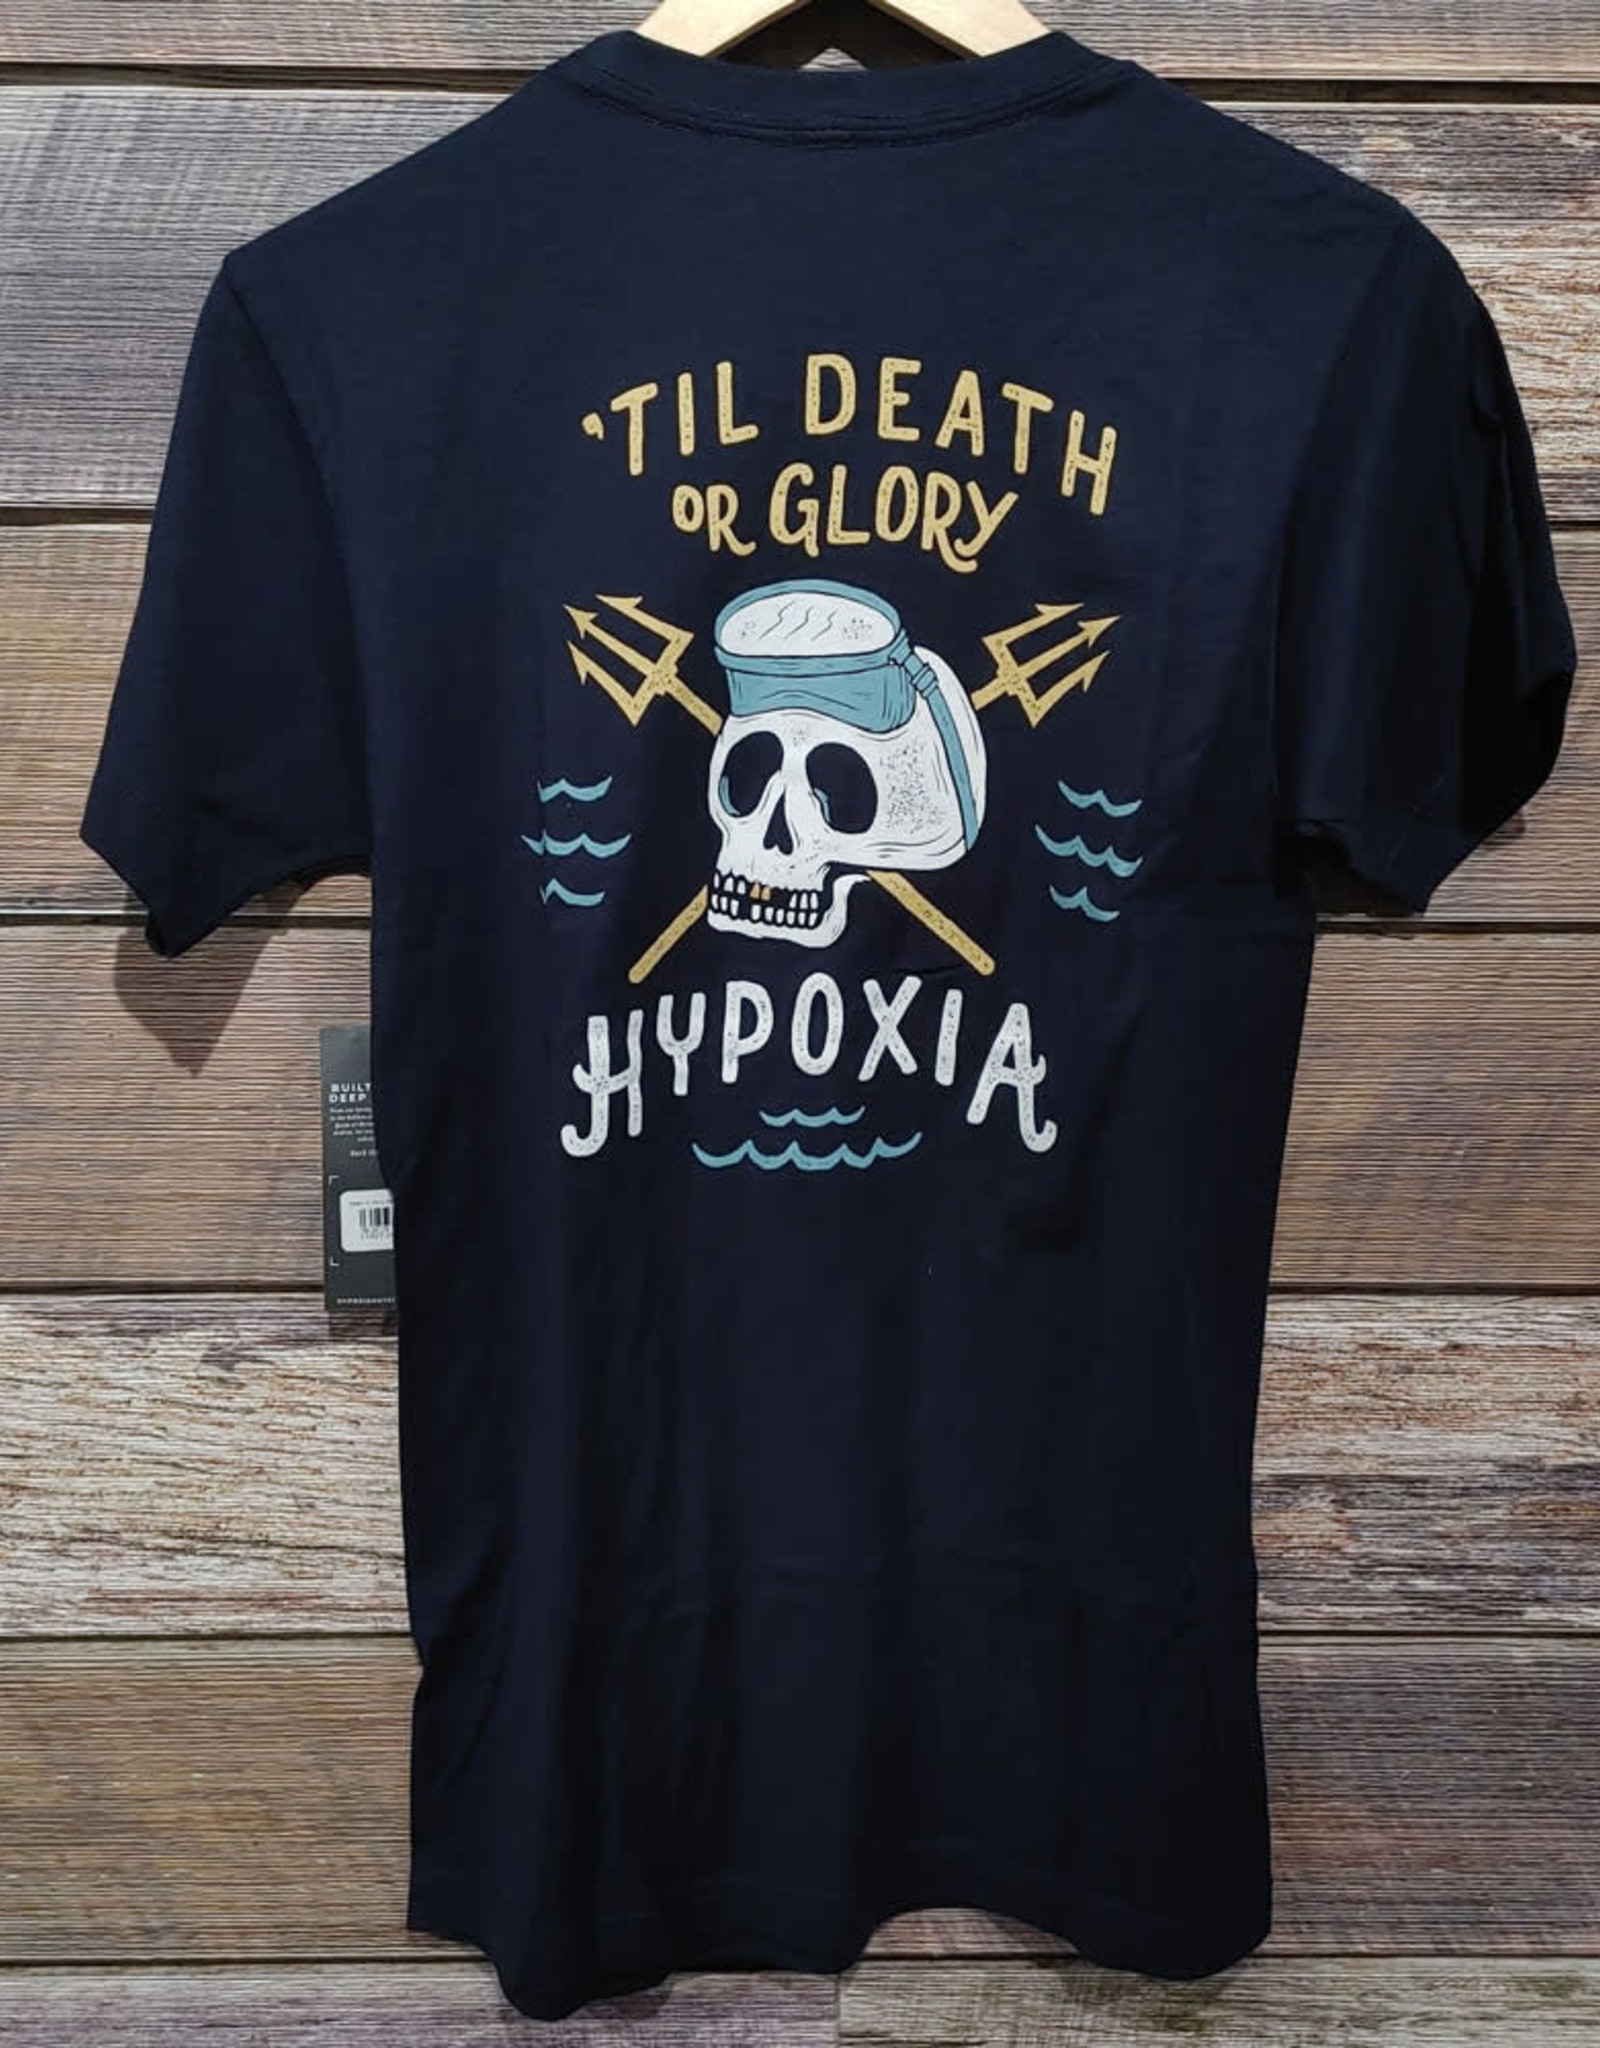 Hypoxia Hypoxia Death or Glory Tee Navy